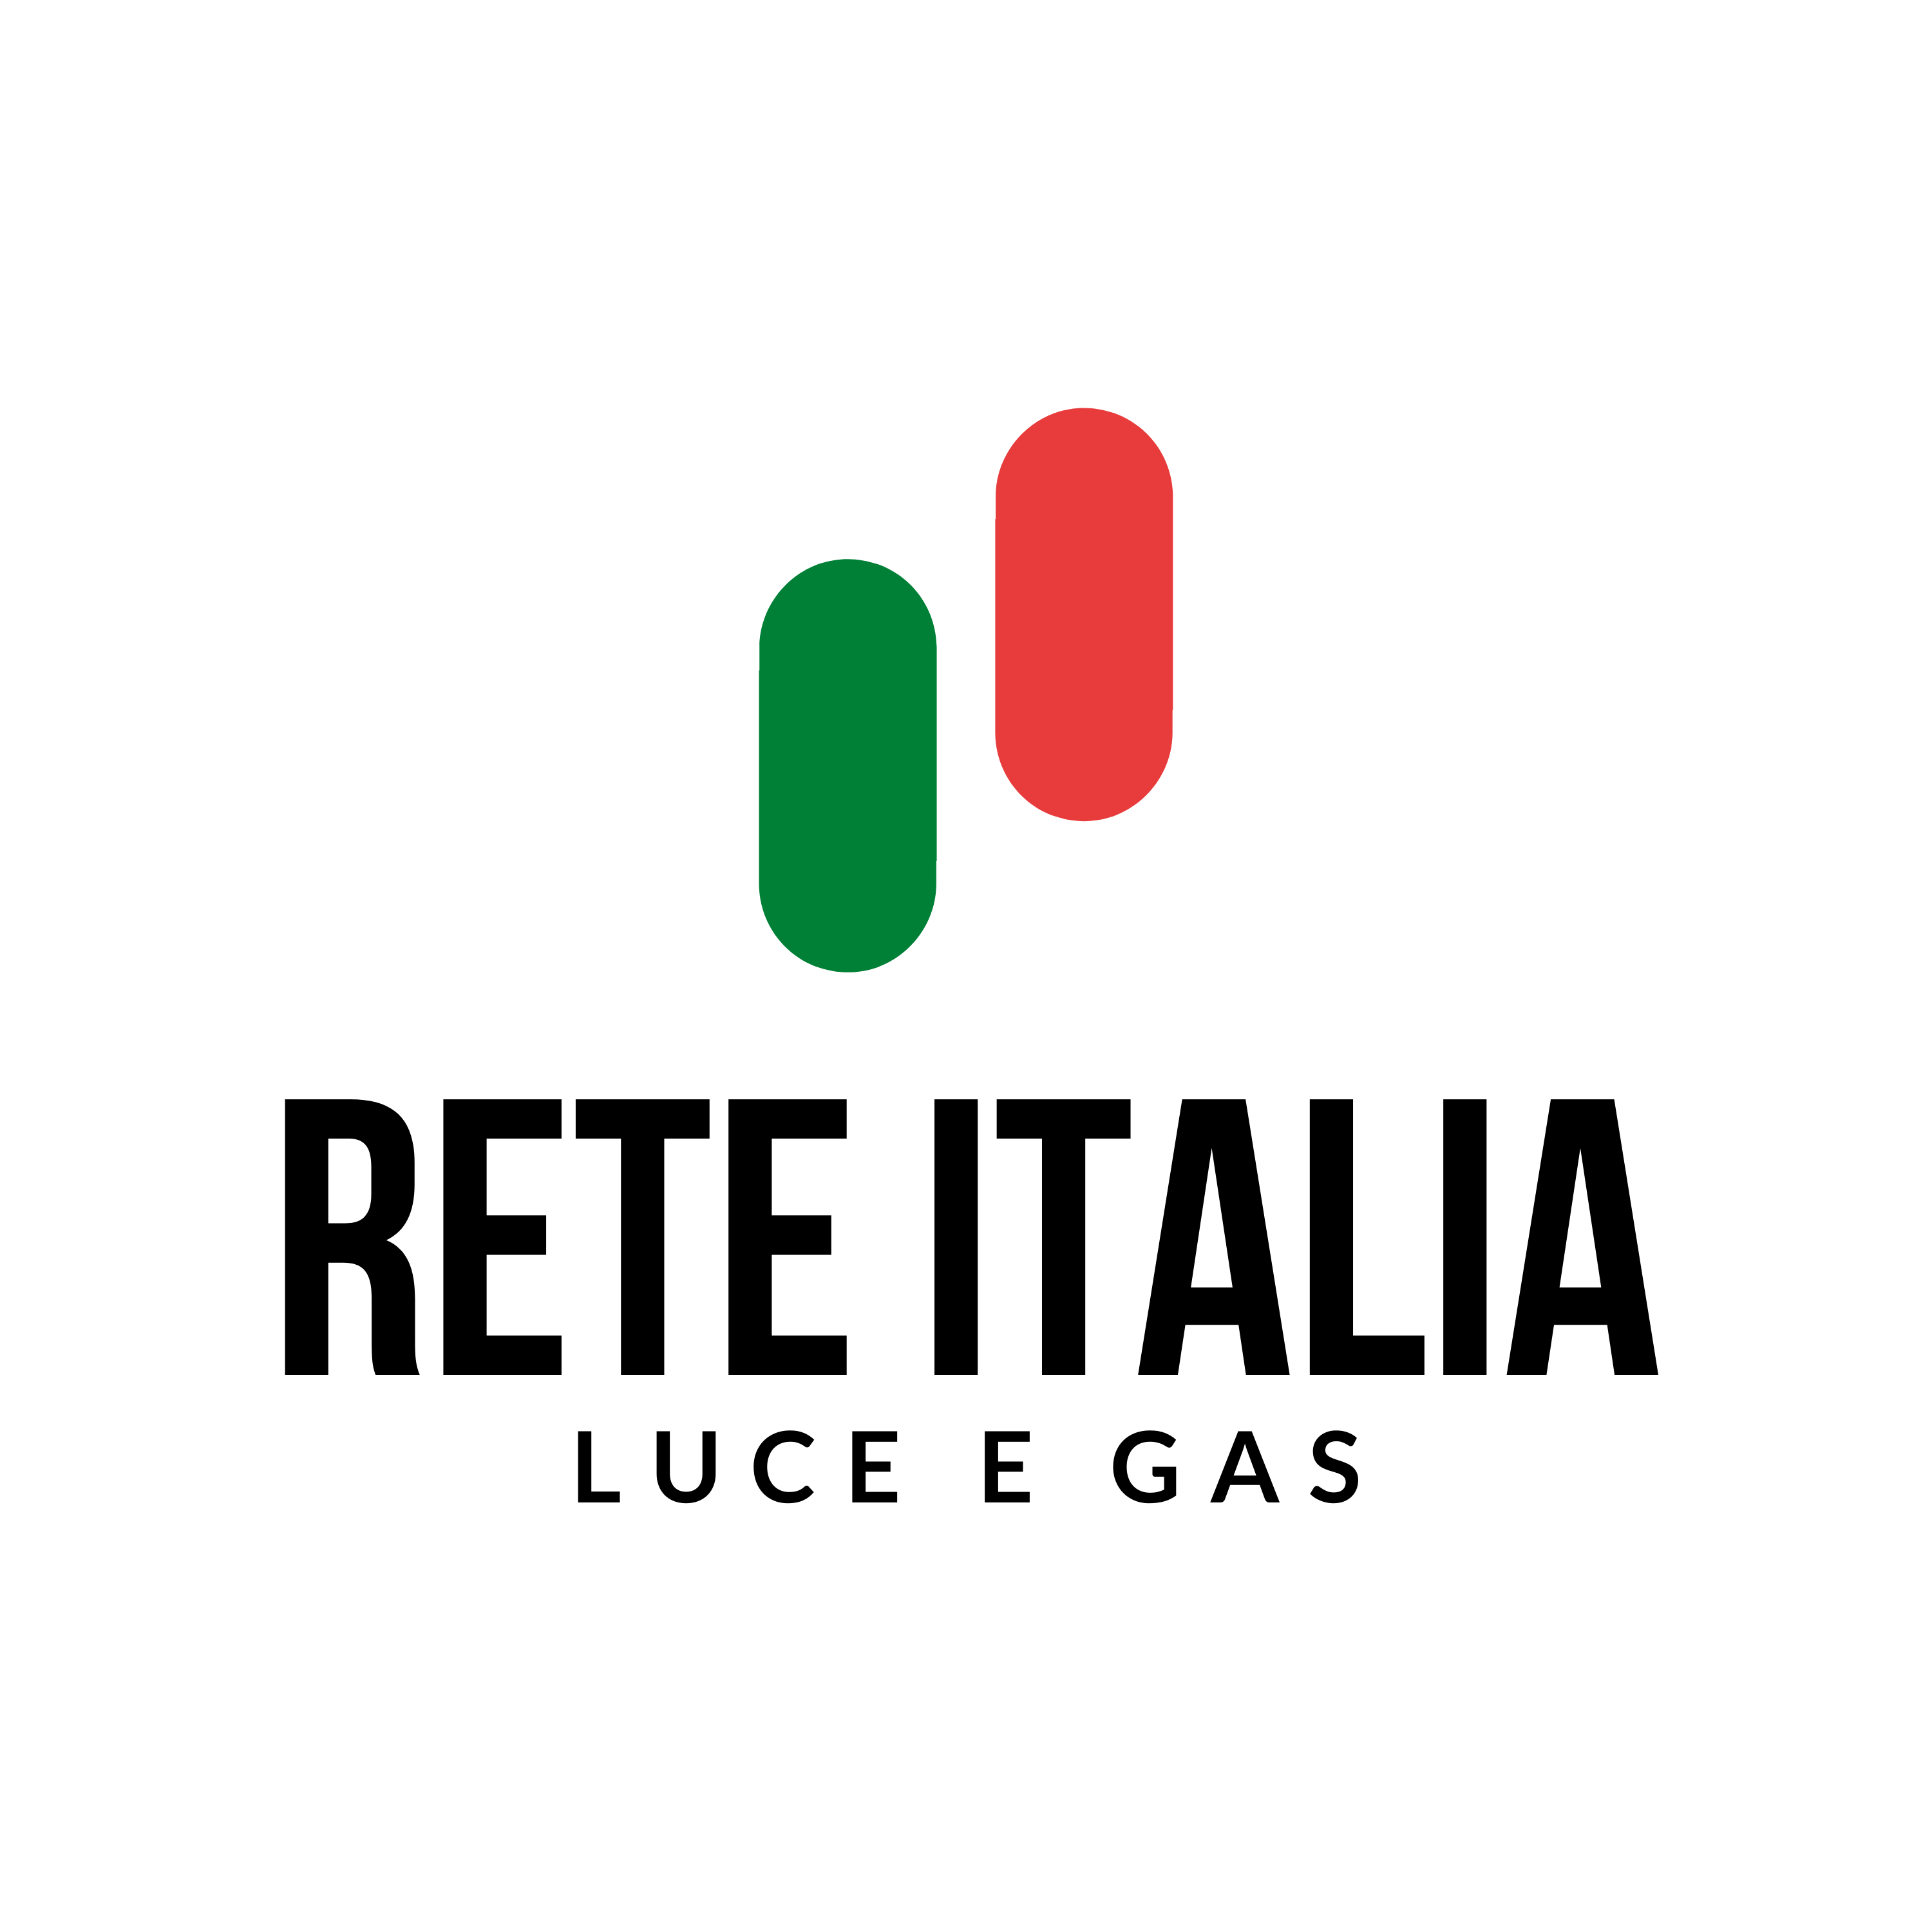 Rete Italia – Gas Luce